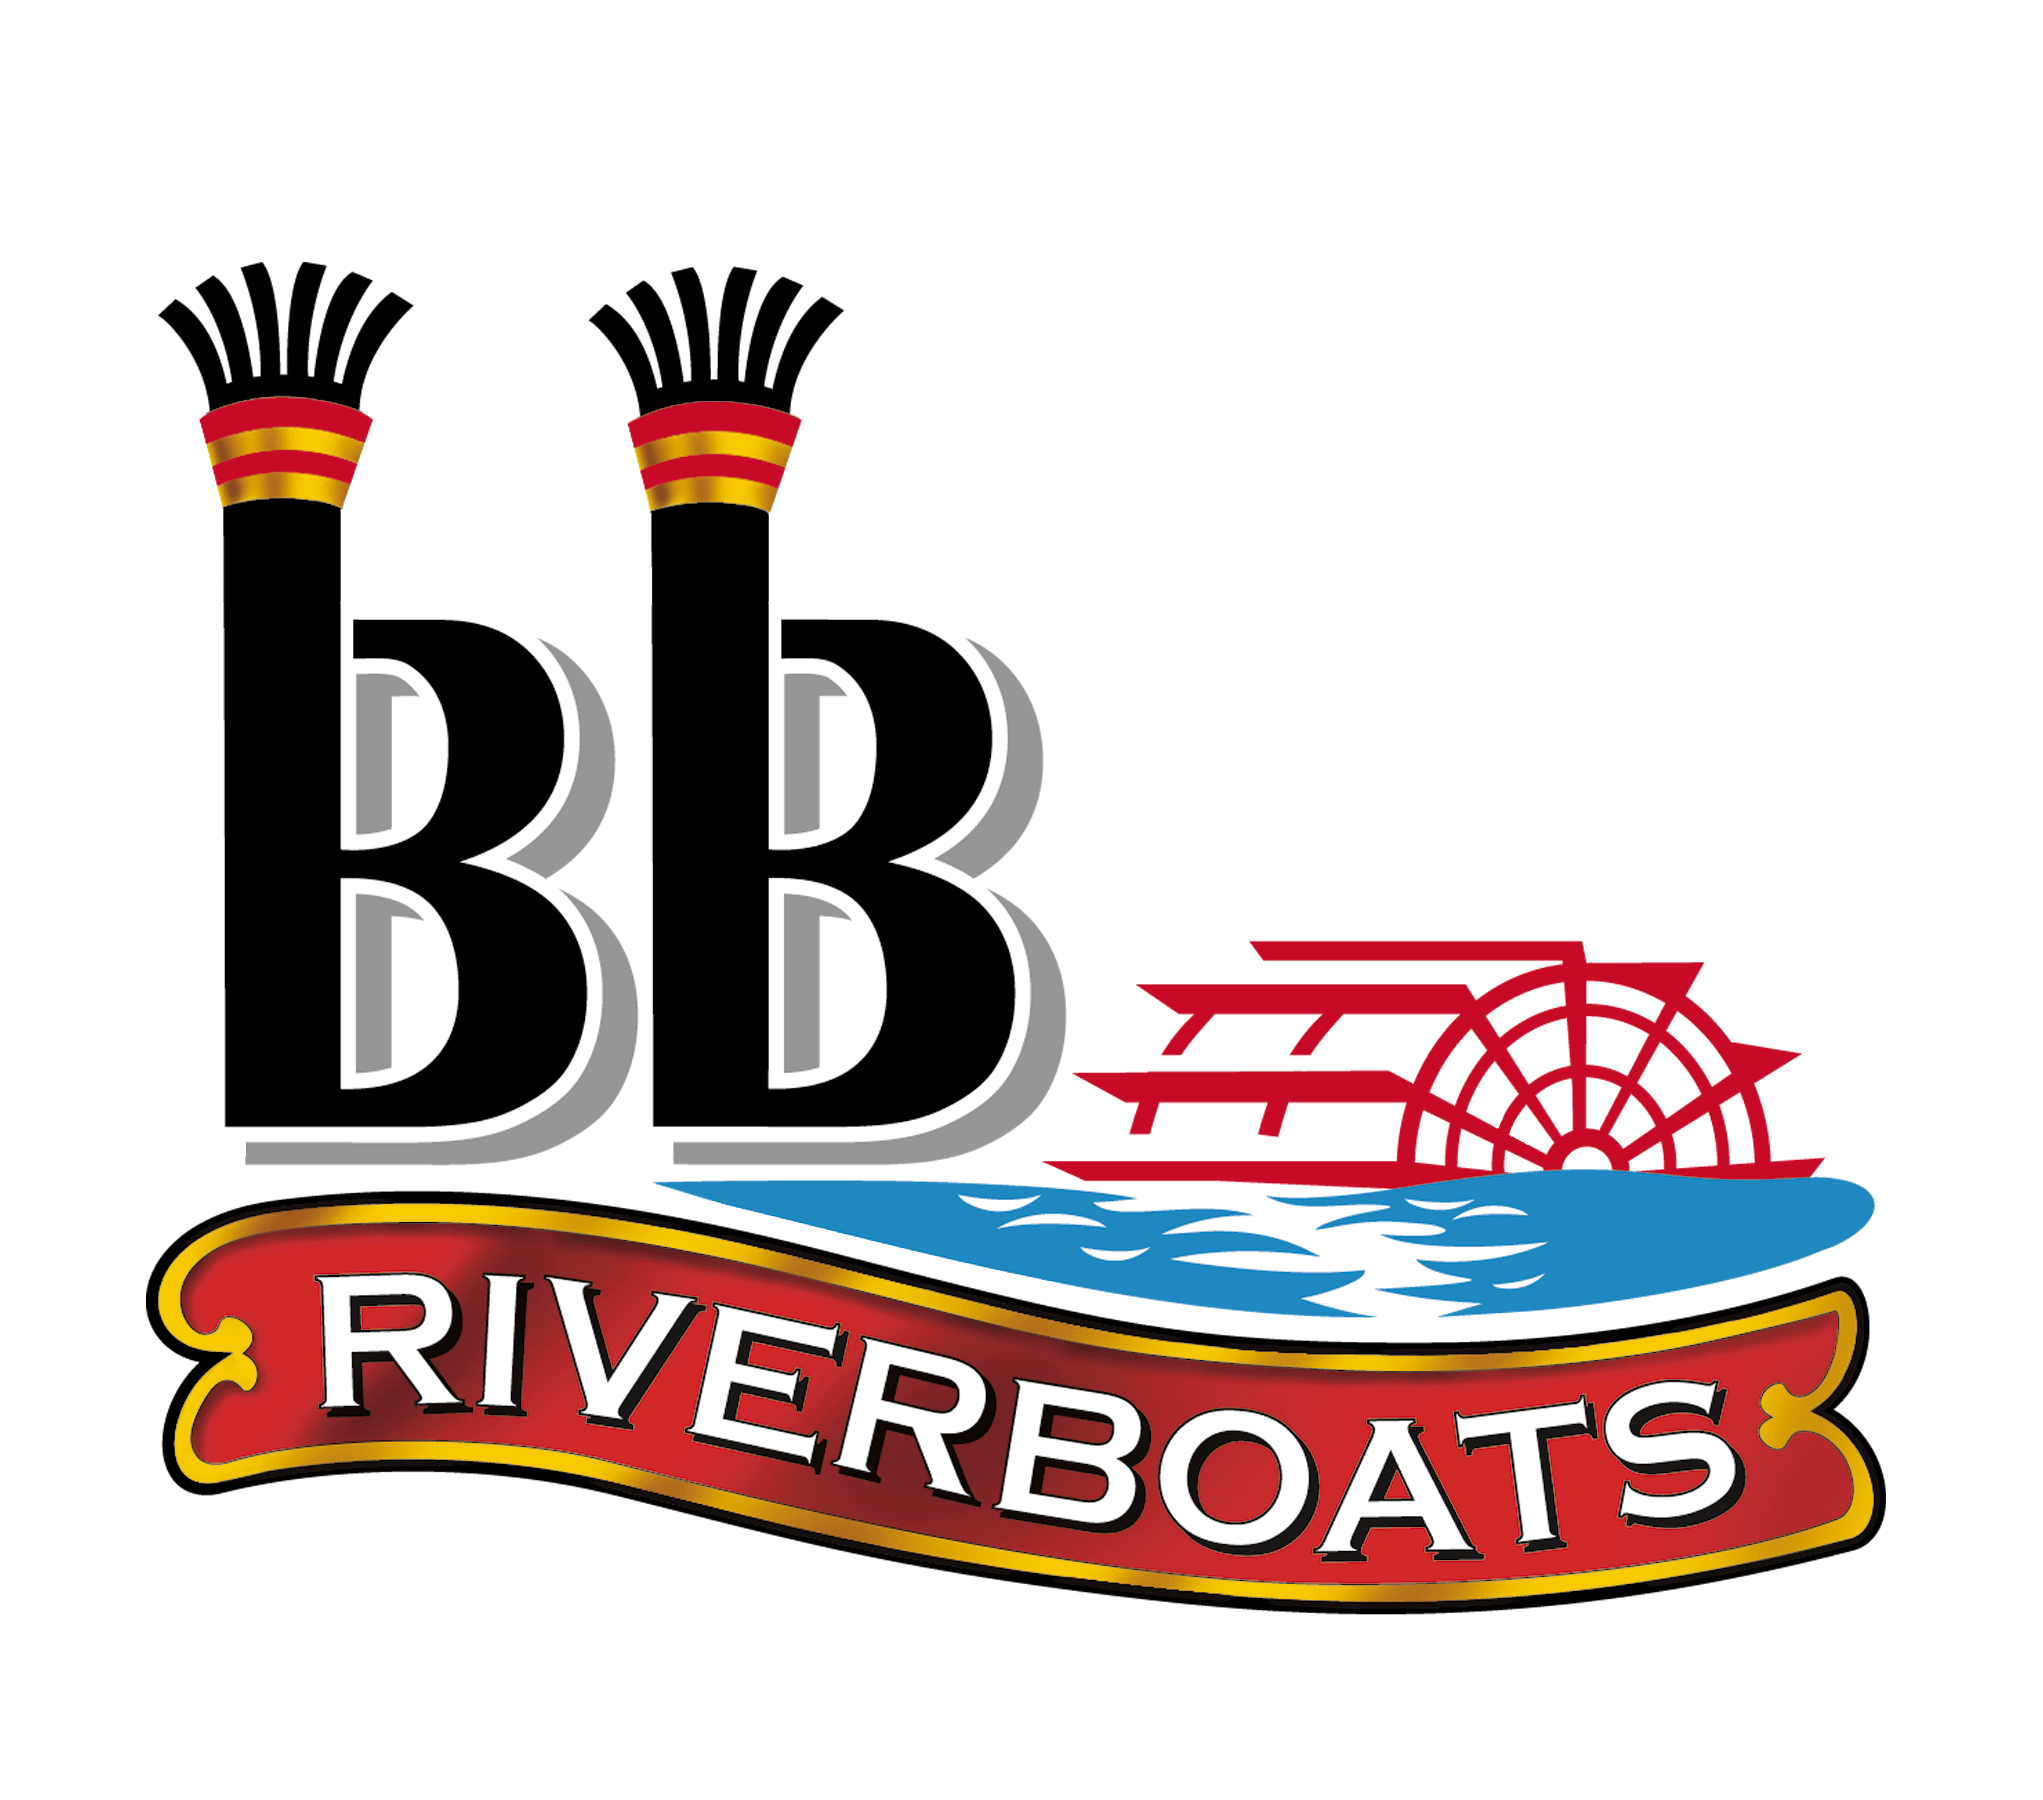 bb riverboats logo